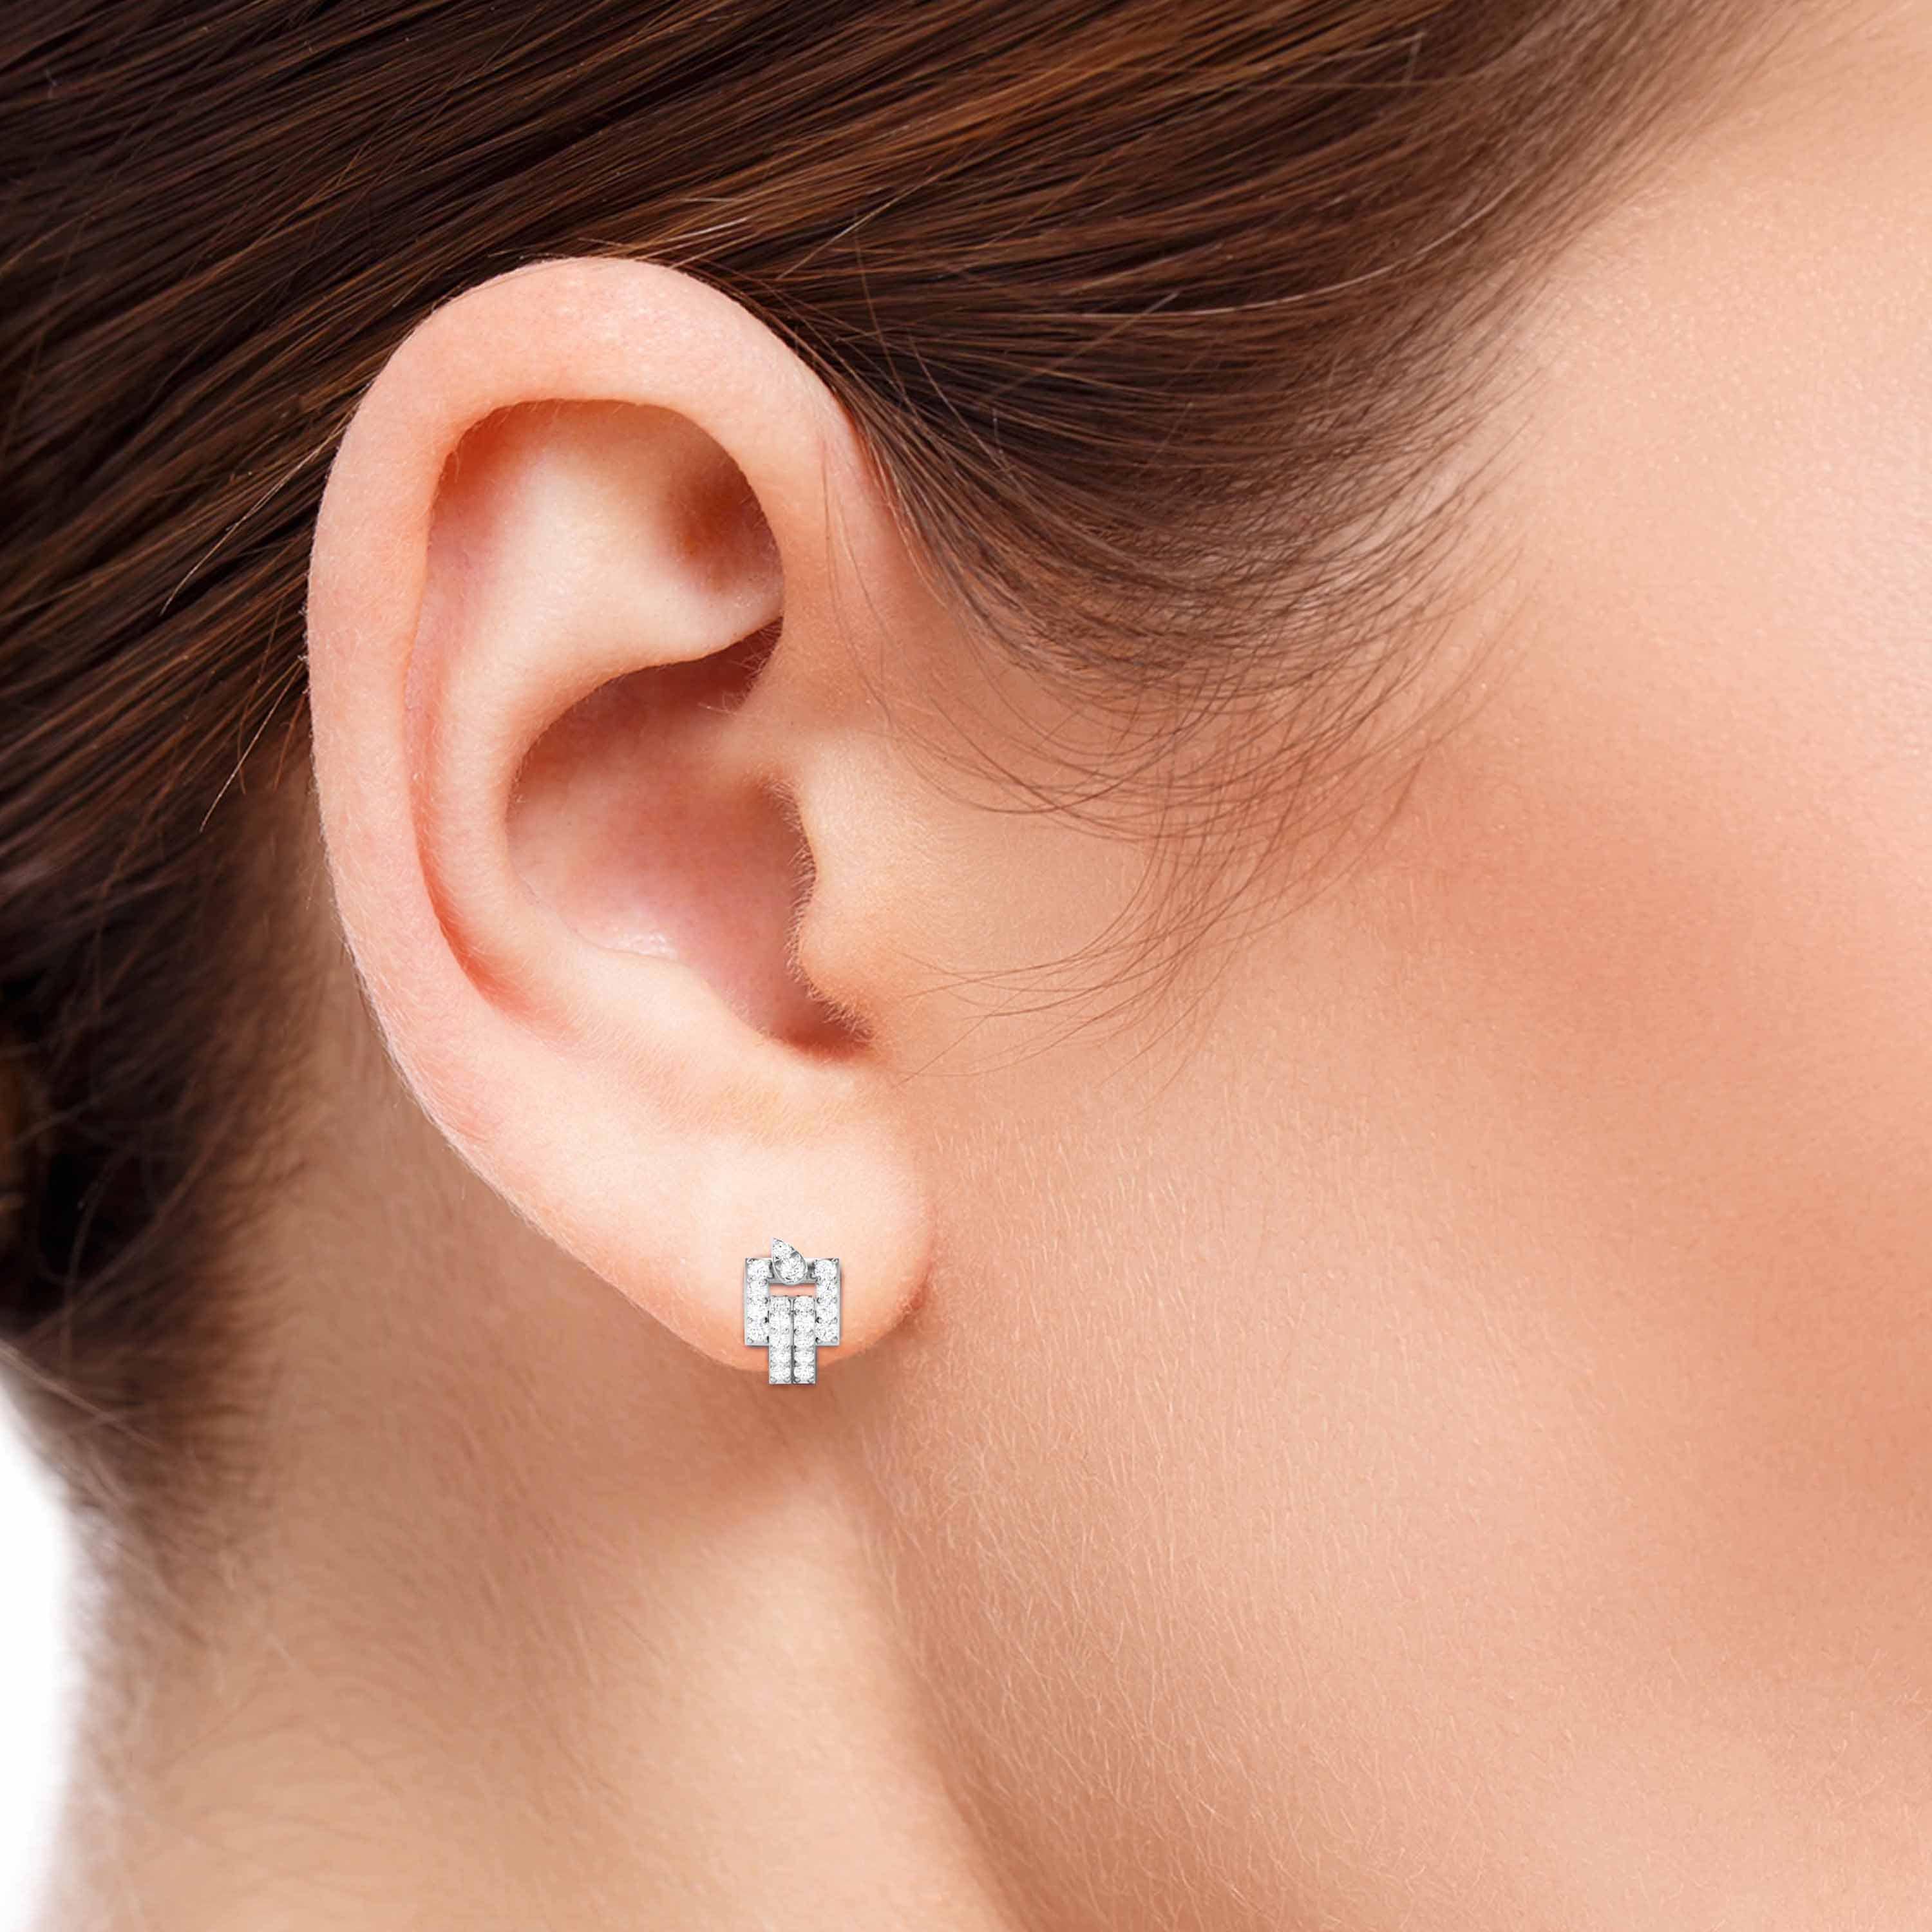 Sterling Silver Diamond Shape Stud Earrings 925 Minimalist Studs 8.5mm  Polished | eBay